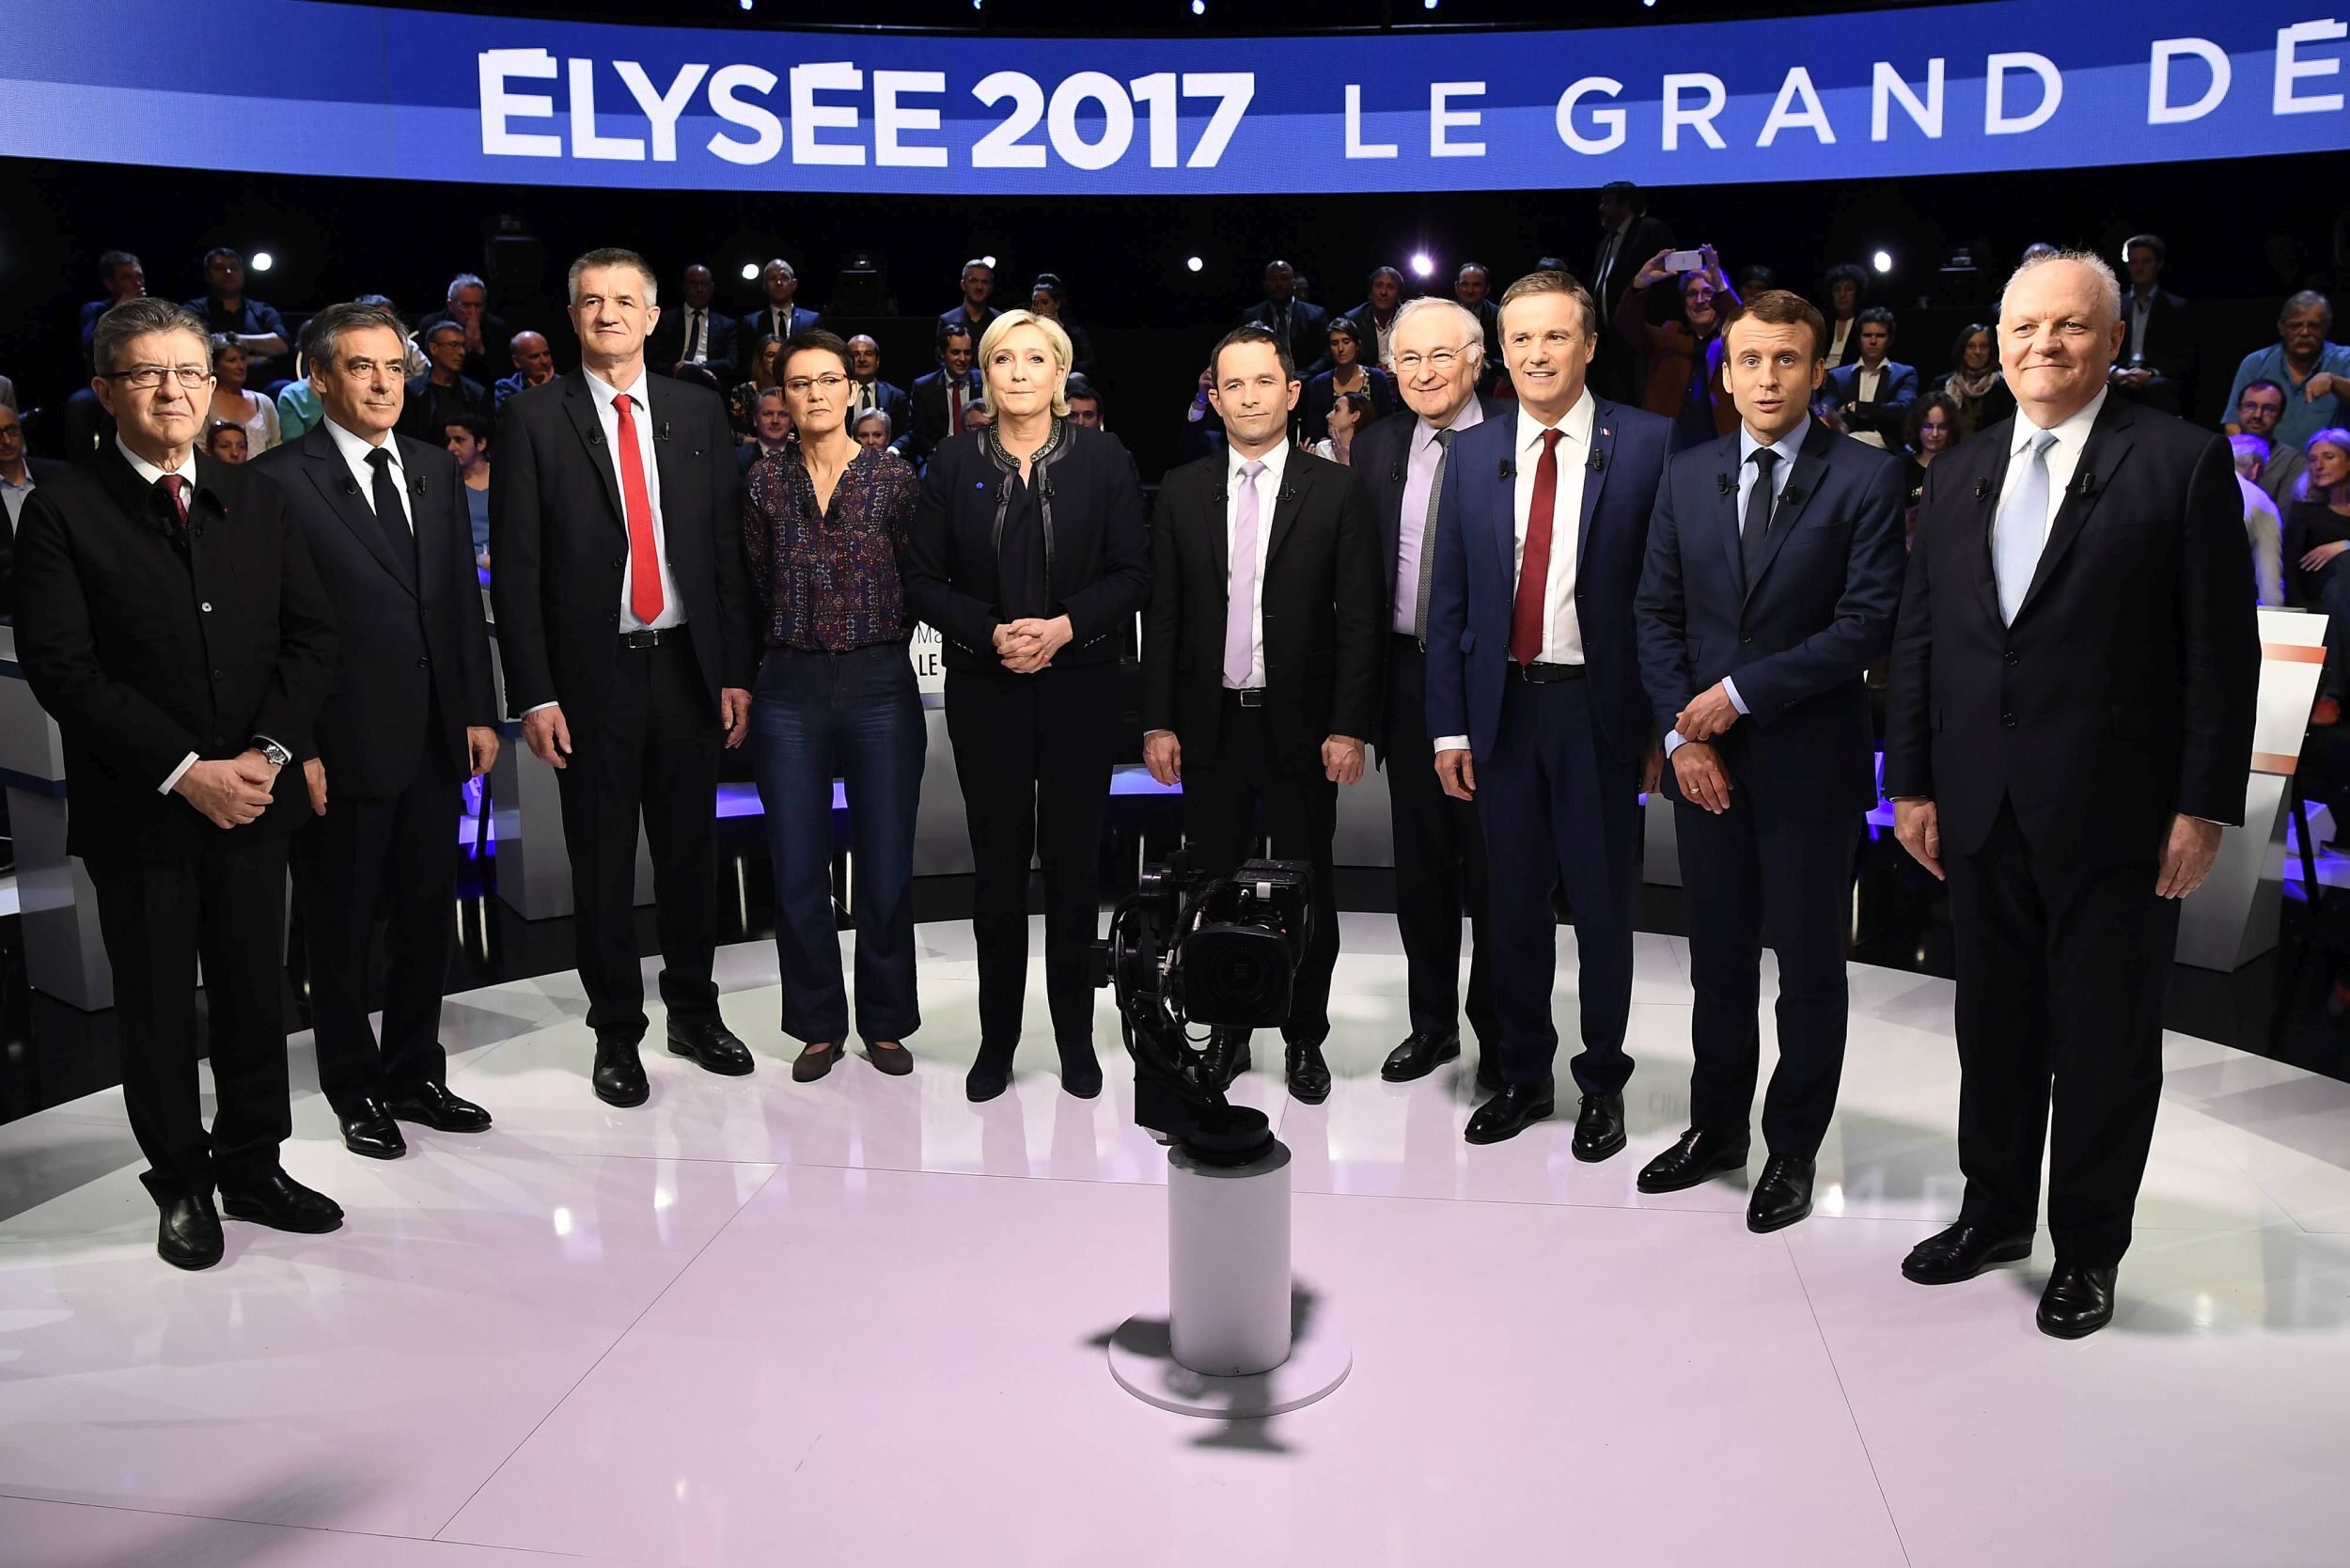 Debata telewizyjna 10 kandydatów na prezydenta Francji